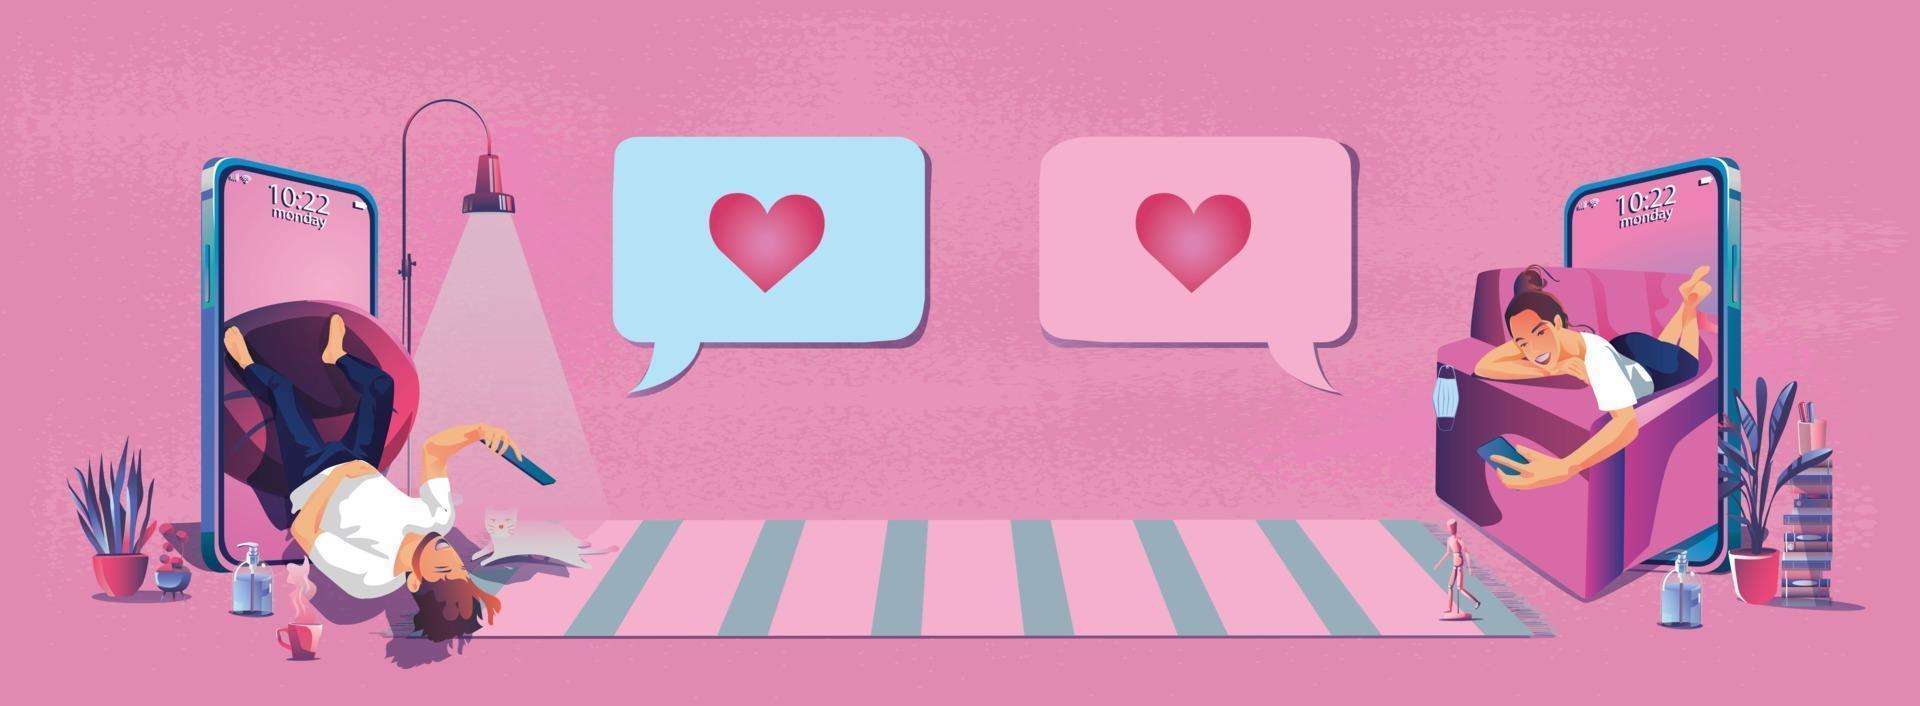 pareja joven enviando mensajes de amor en forma de corazón el día de san valentín este romántico y lindo tono rosa se ve bien para decir amor, usar la ilustración de diseño plano de vector de pantalla de teléfono inteligente o dispositivo.